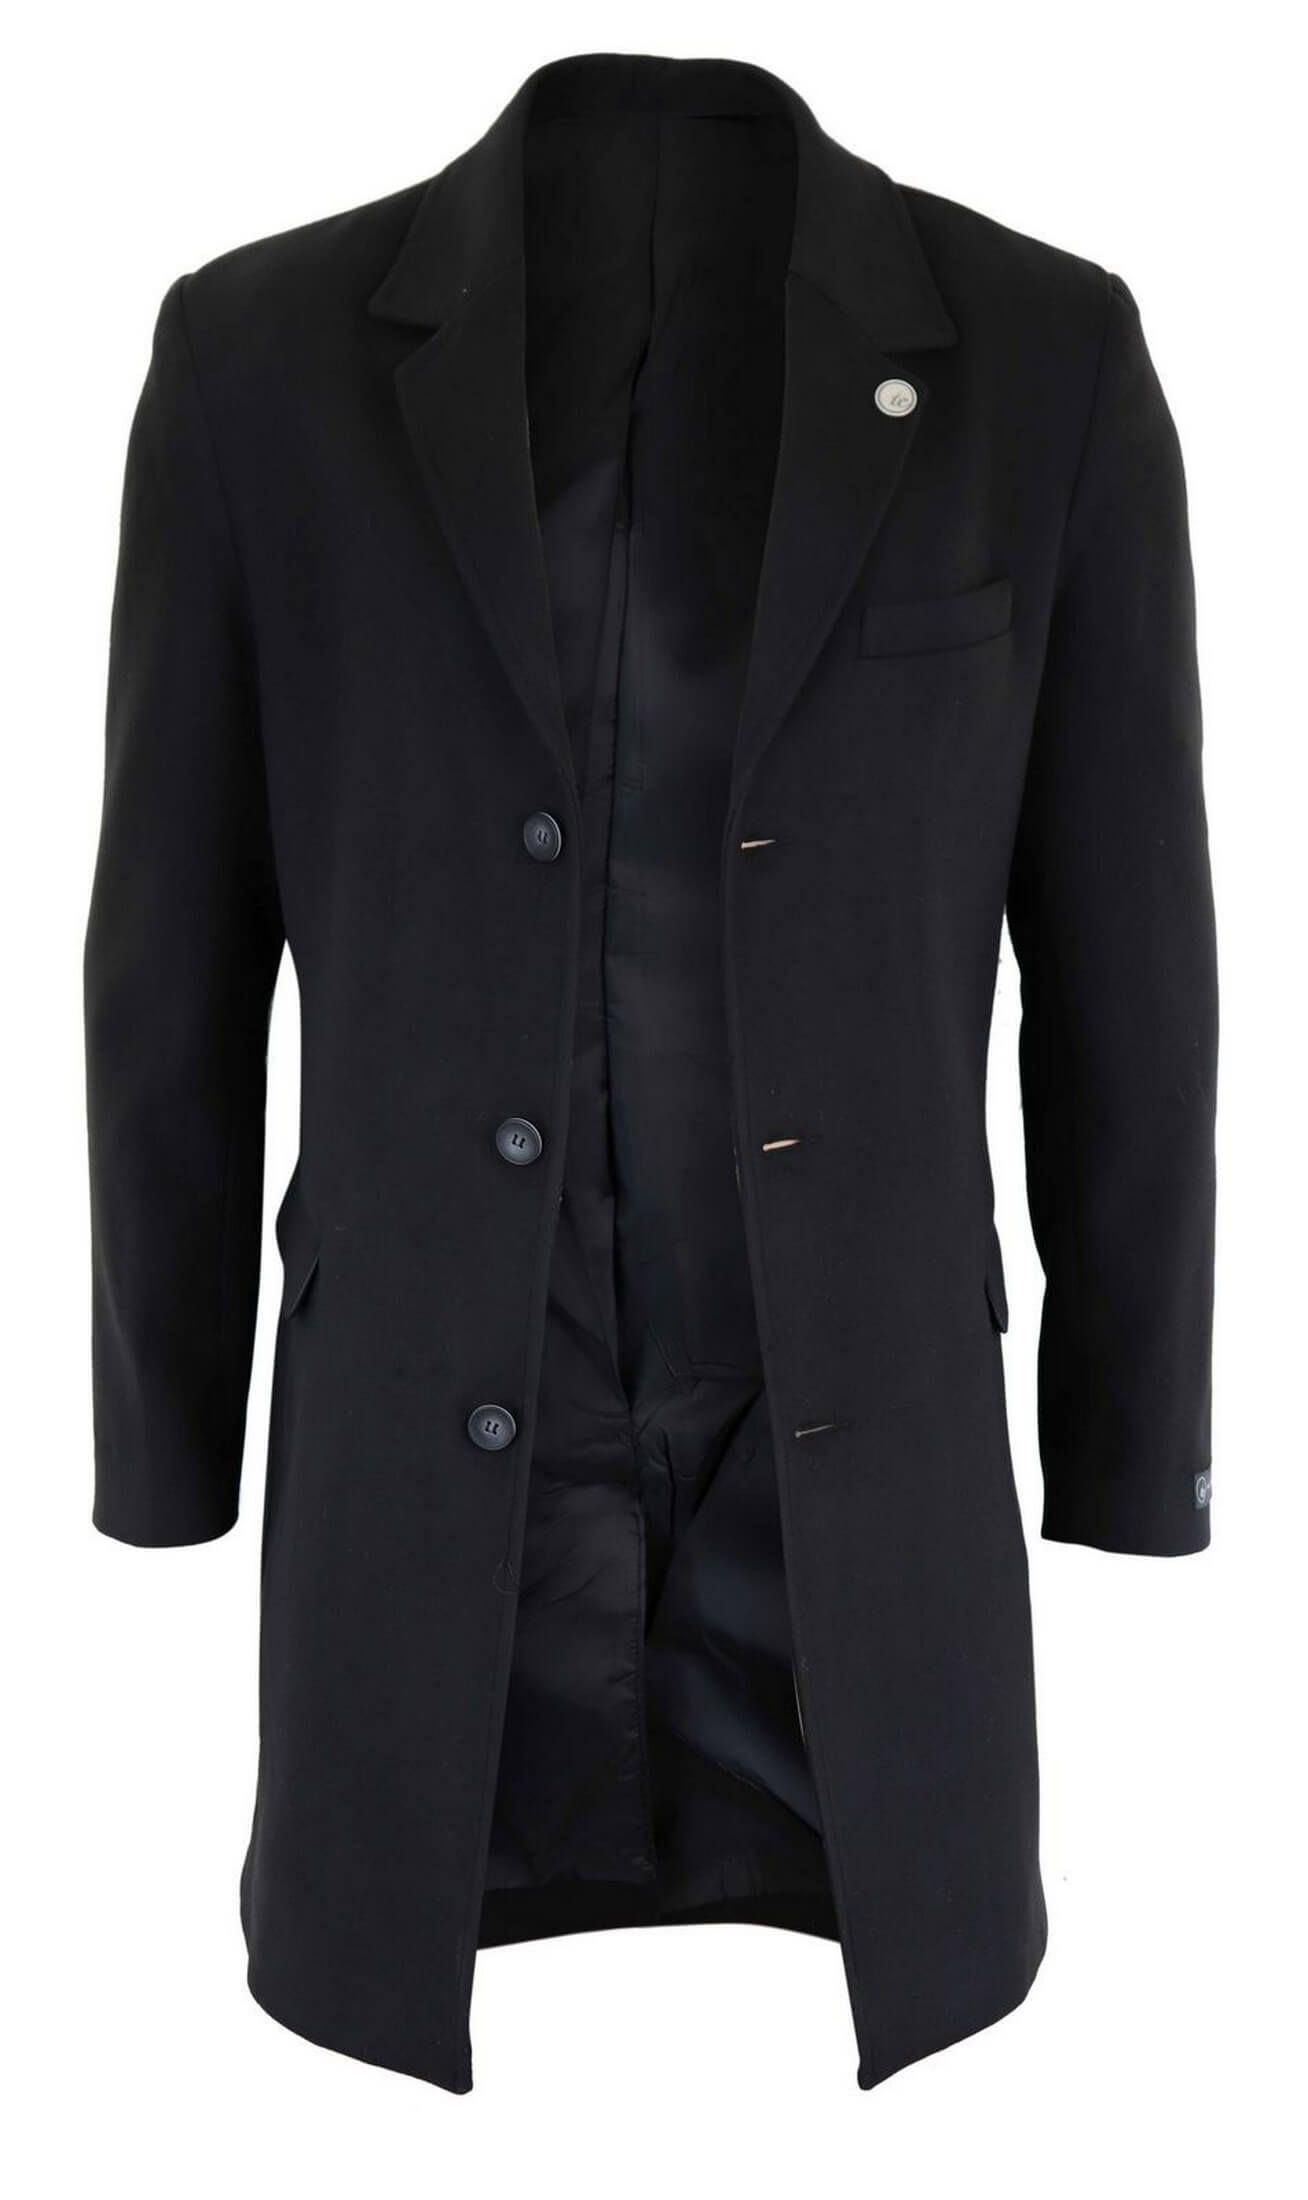 Men's Classic Wool Long Overcoat-Black: Buy Online - Happy Gentleman